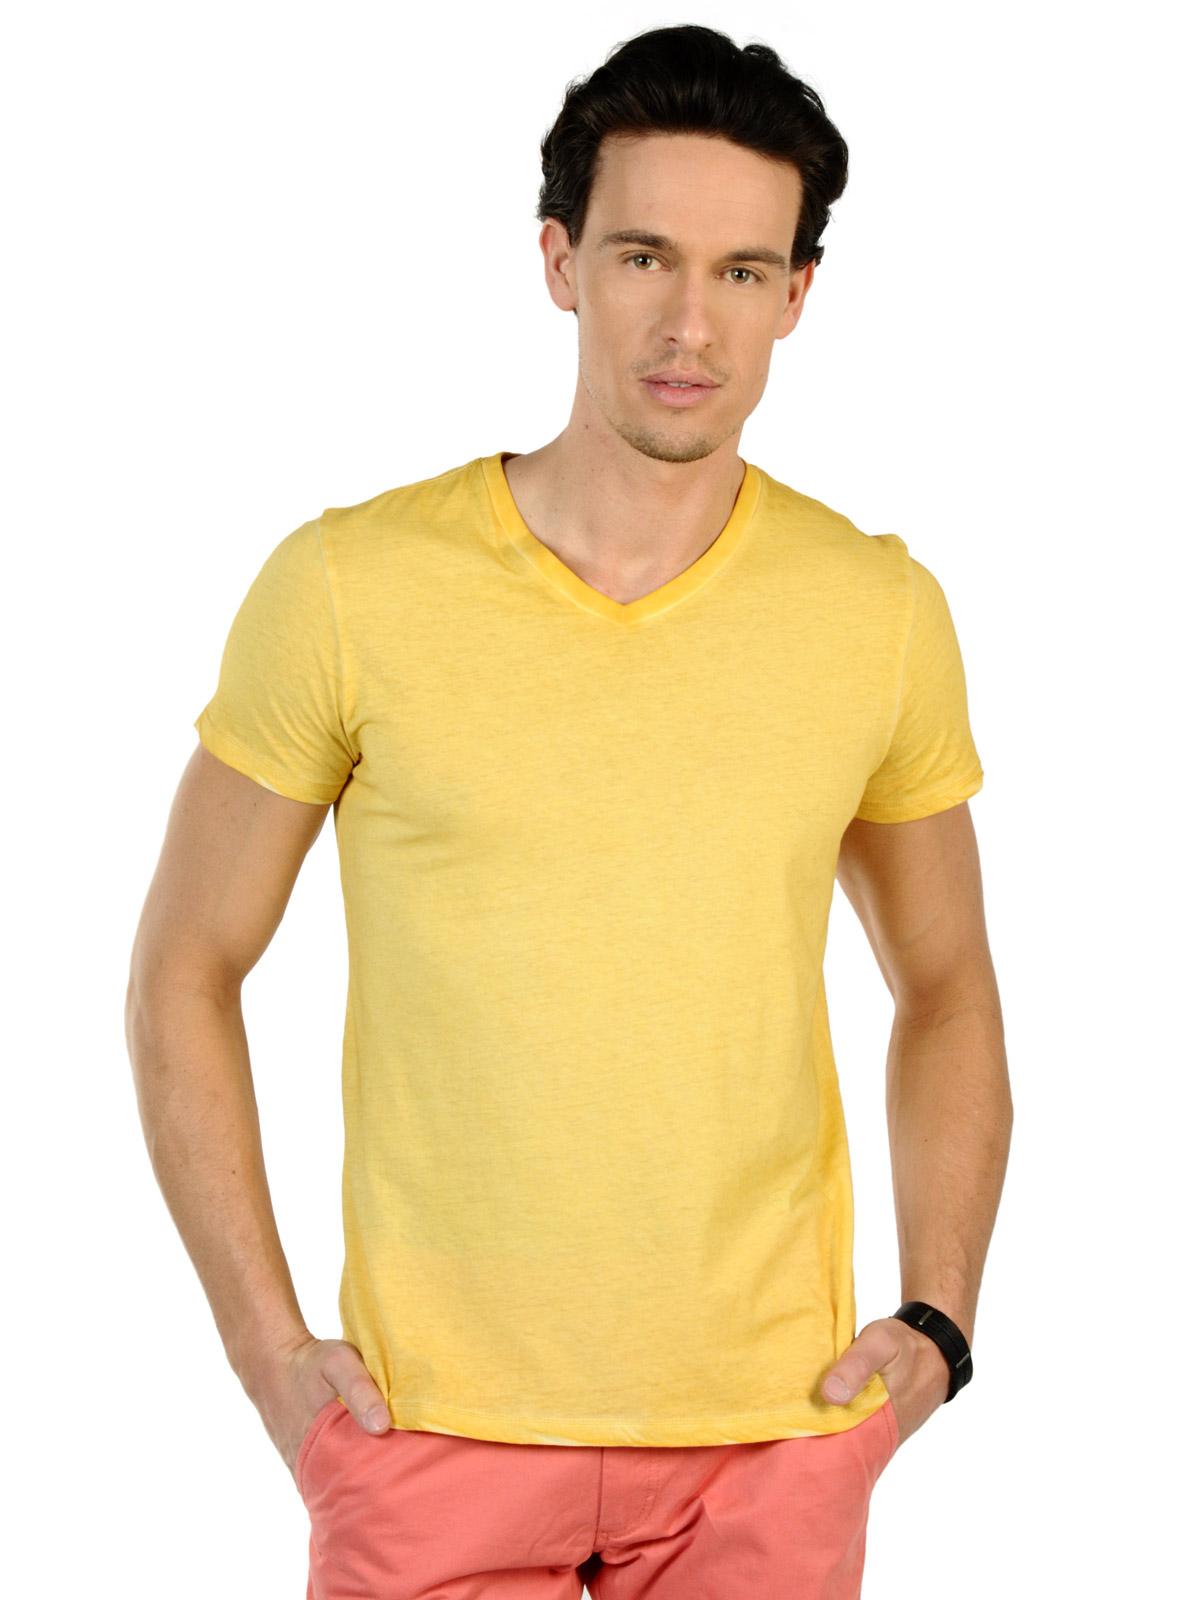 Foto Poolman Camiseta amarillo XL foto 423748